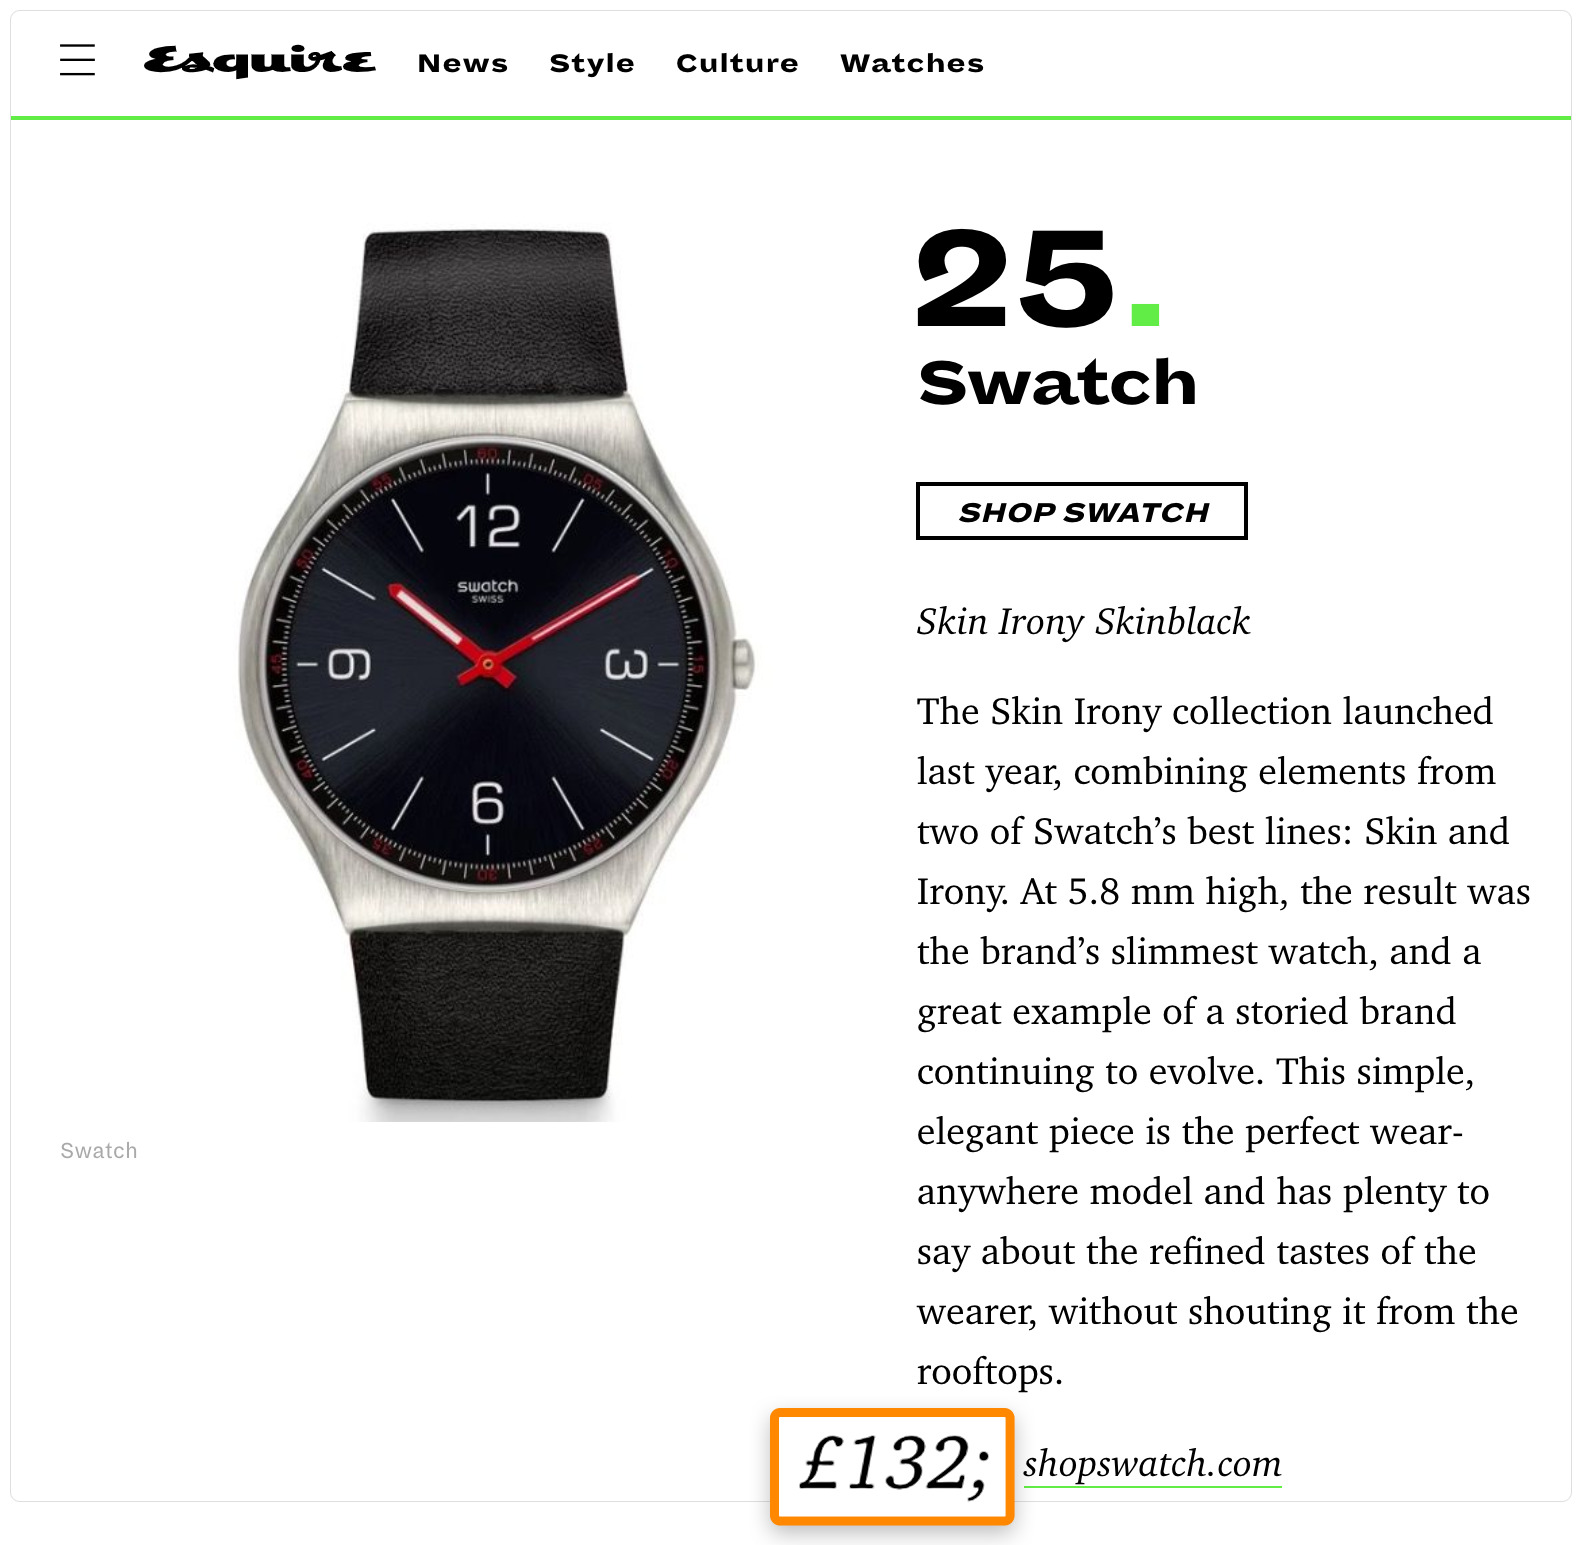 tất cả đều đề cập đến giá,  những người tìm kiếm rõ ràng đang tìm kiếm một chiếc đồng hồ mới, và mọi người đều có tiền để mua..